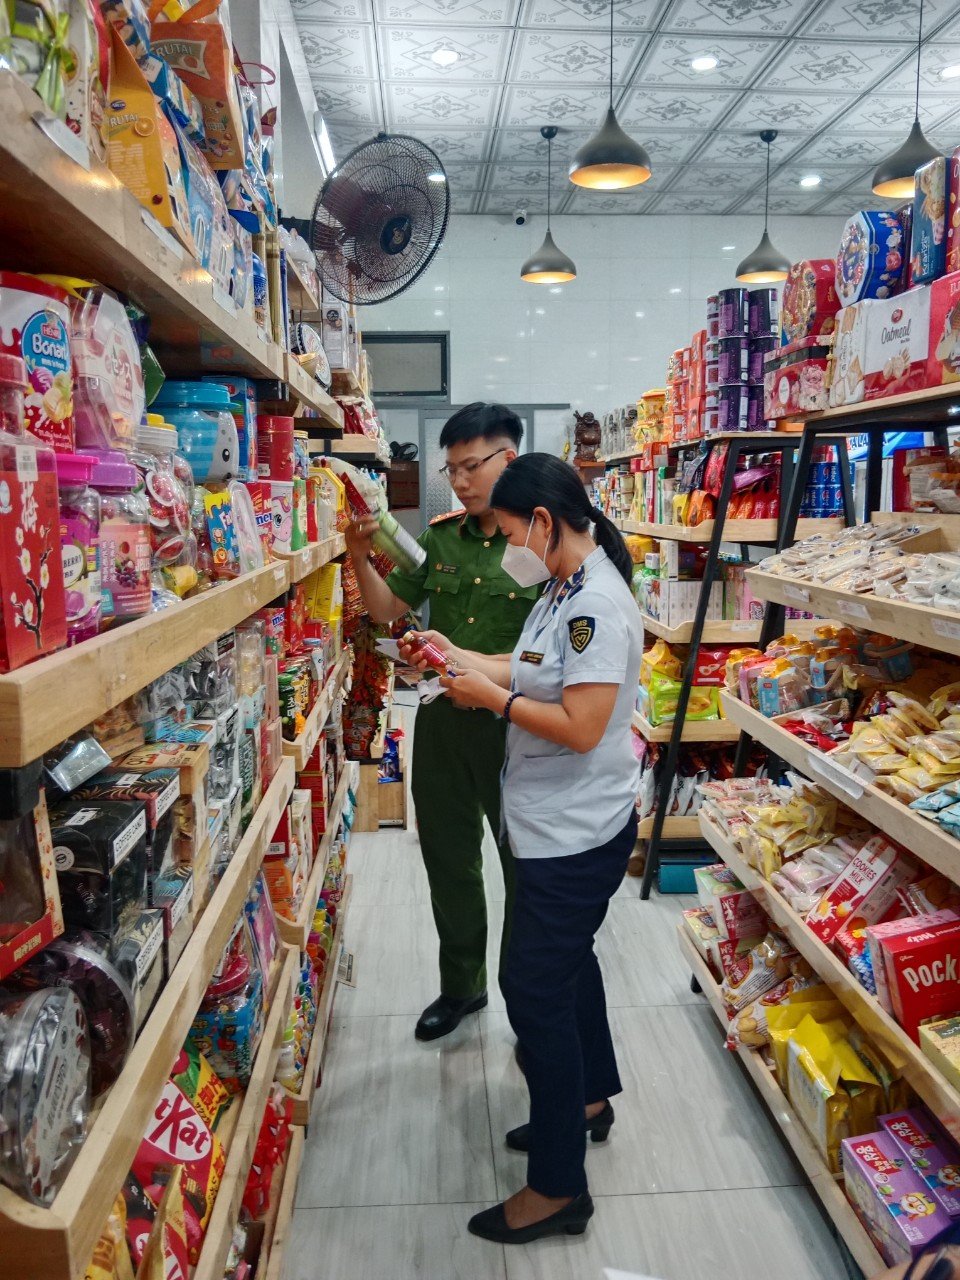 Đoàn kiểm tra của Đội QLTT số 4 phối hợp với Phòng cảnh sát điều tra tội phạm về tham nhũng, kinh tế, buôn lậu, môi trường thuộc Công an tỉnh Tây Ninh tiến hành kiểm tra cơ sở kinh doanh bánh, kẹo tại Thành phố Tây Ninh, tỉnh Tây Ninh